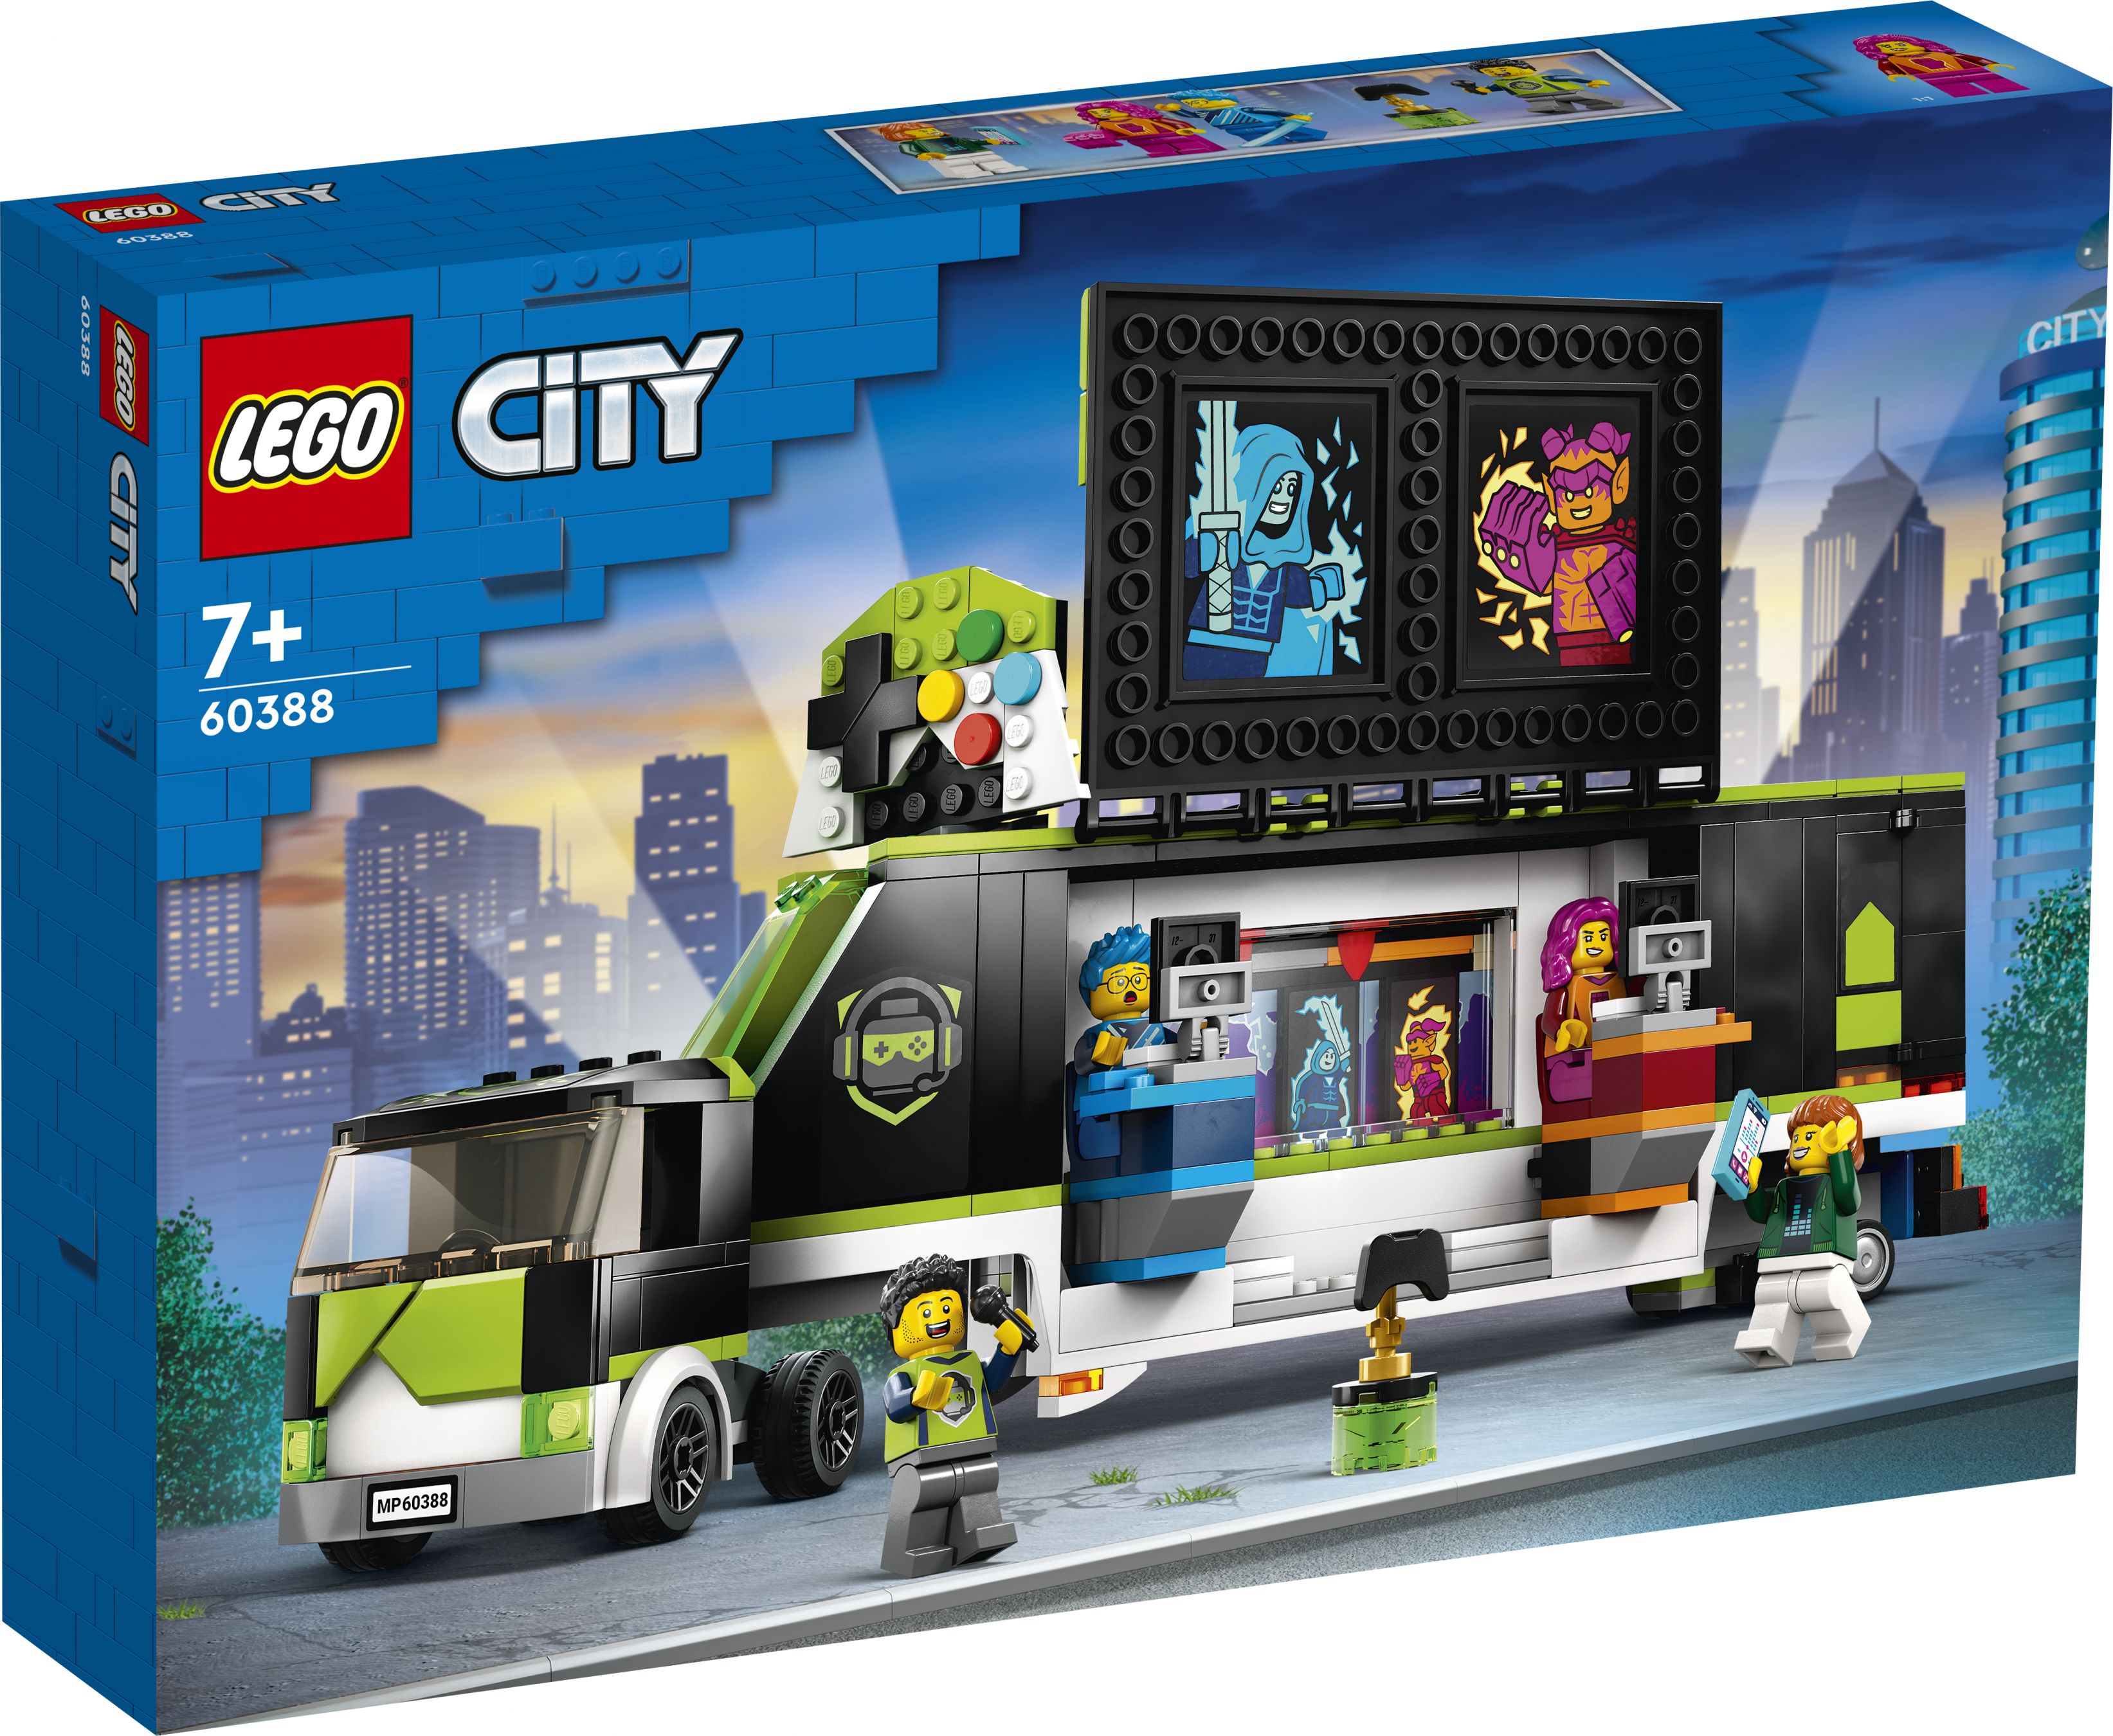 LEGO City 60388 Gaming Turnier Truck LEGO_60388_Box1_V29.jpg